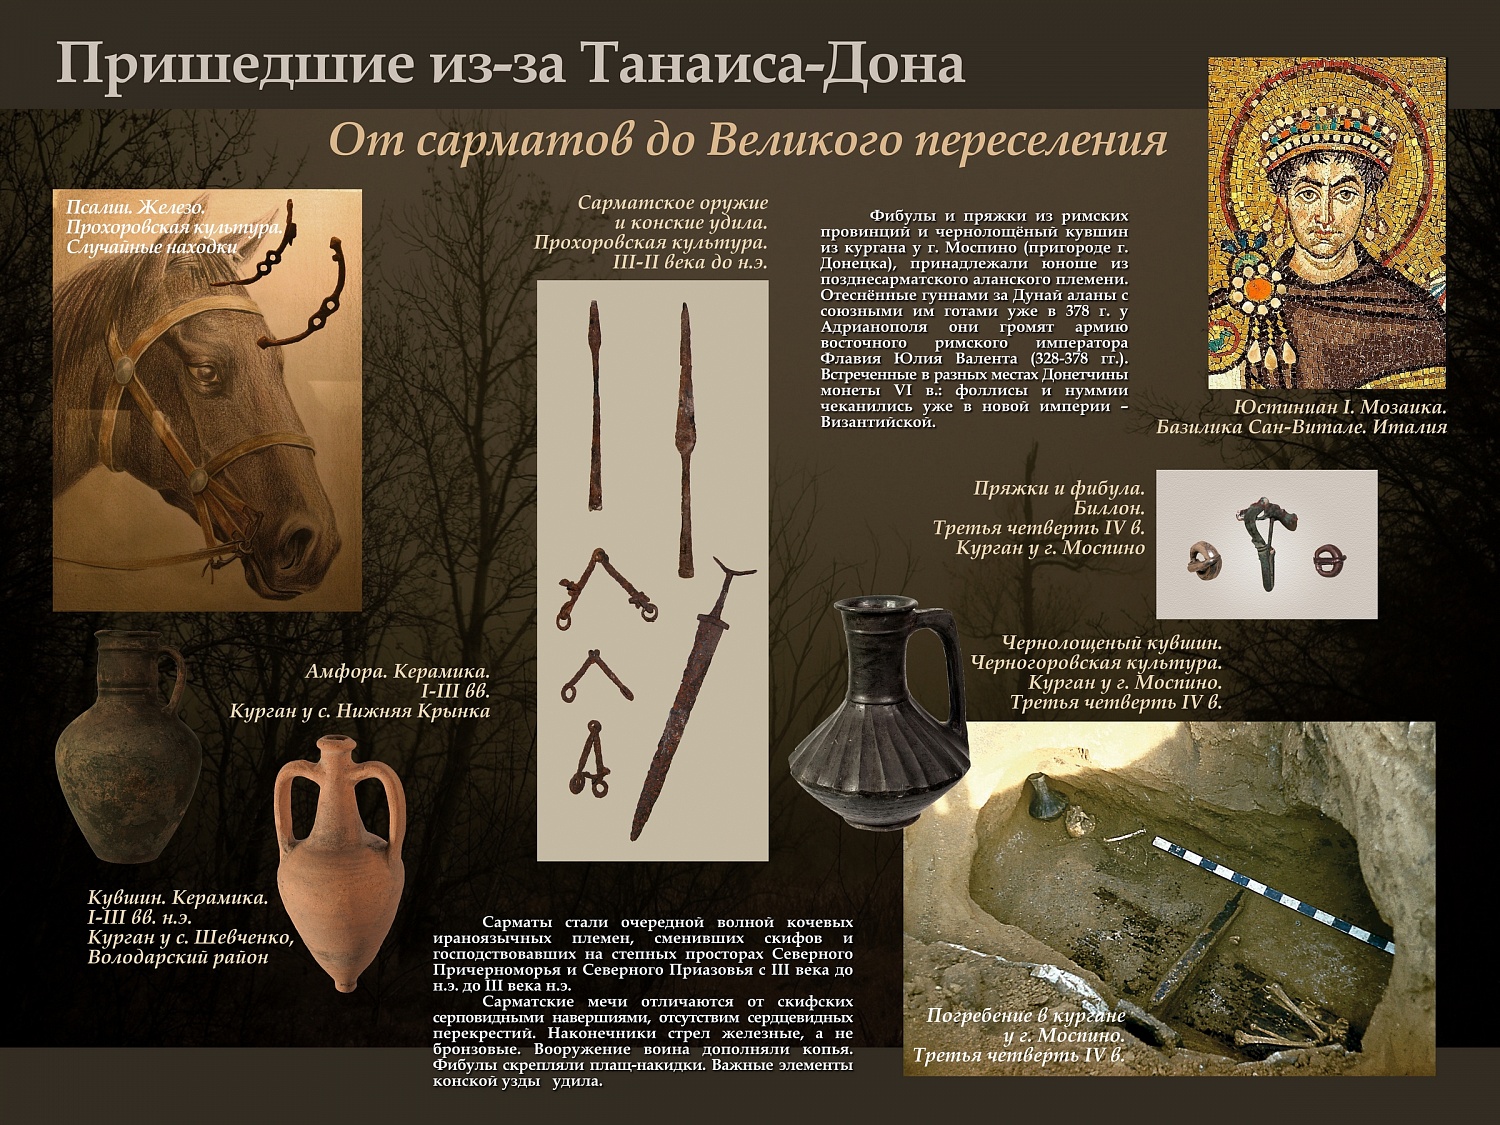 Онлайн-выставка «Археология Донецкого края в музейном собрании»